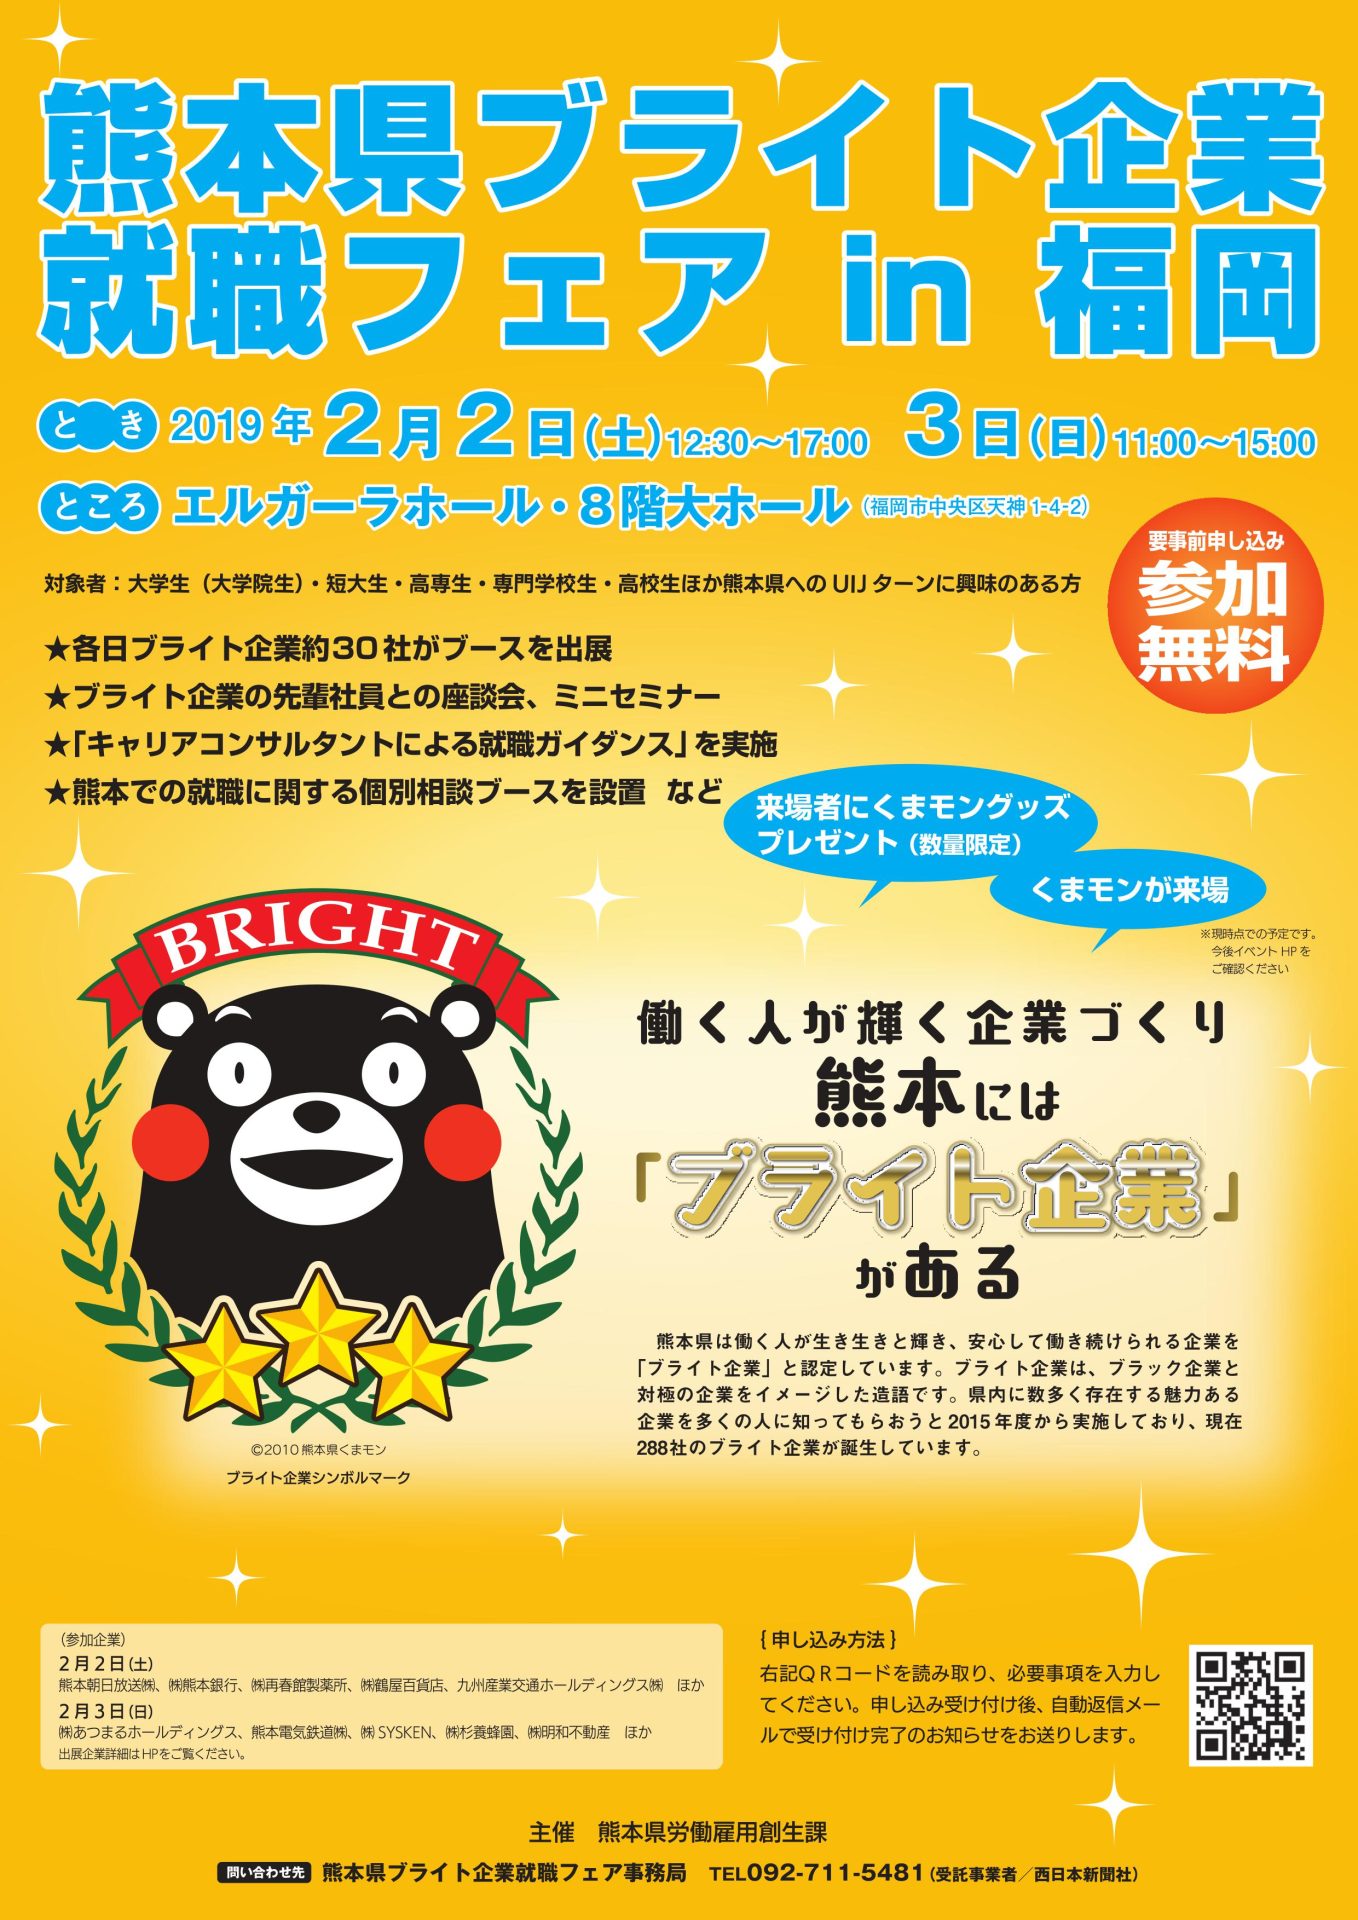 熊本県ブライト企業就職フェア in福岡 | 移住関連イベント情報